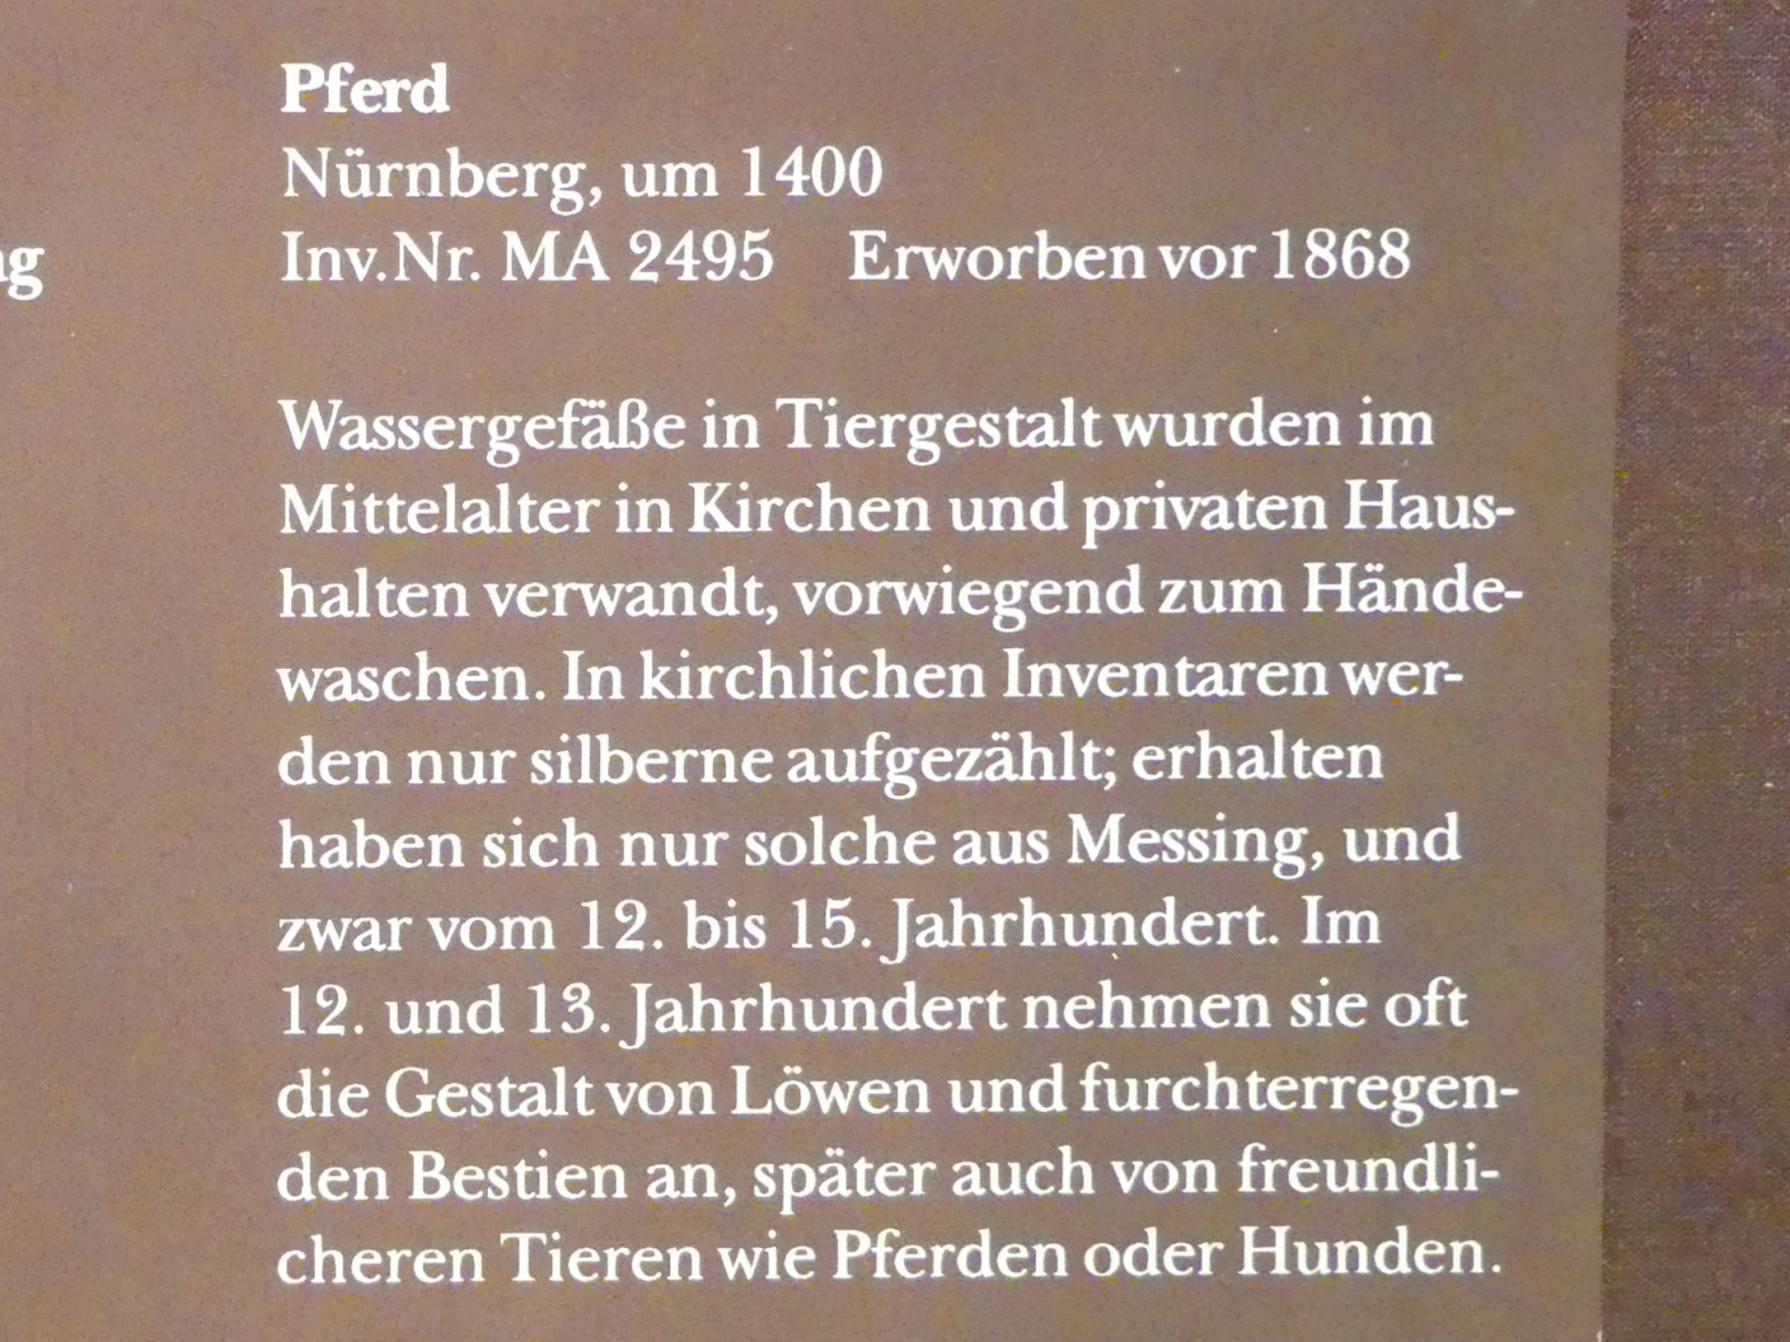 Pferd, München, Bayerisches Nationalmuseum, Saal 1, um 1400, Bild 2/2